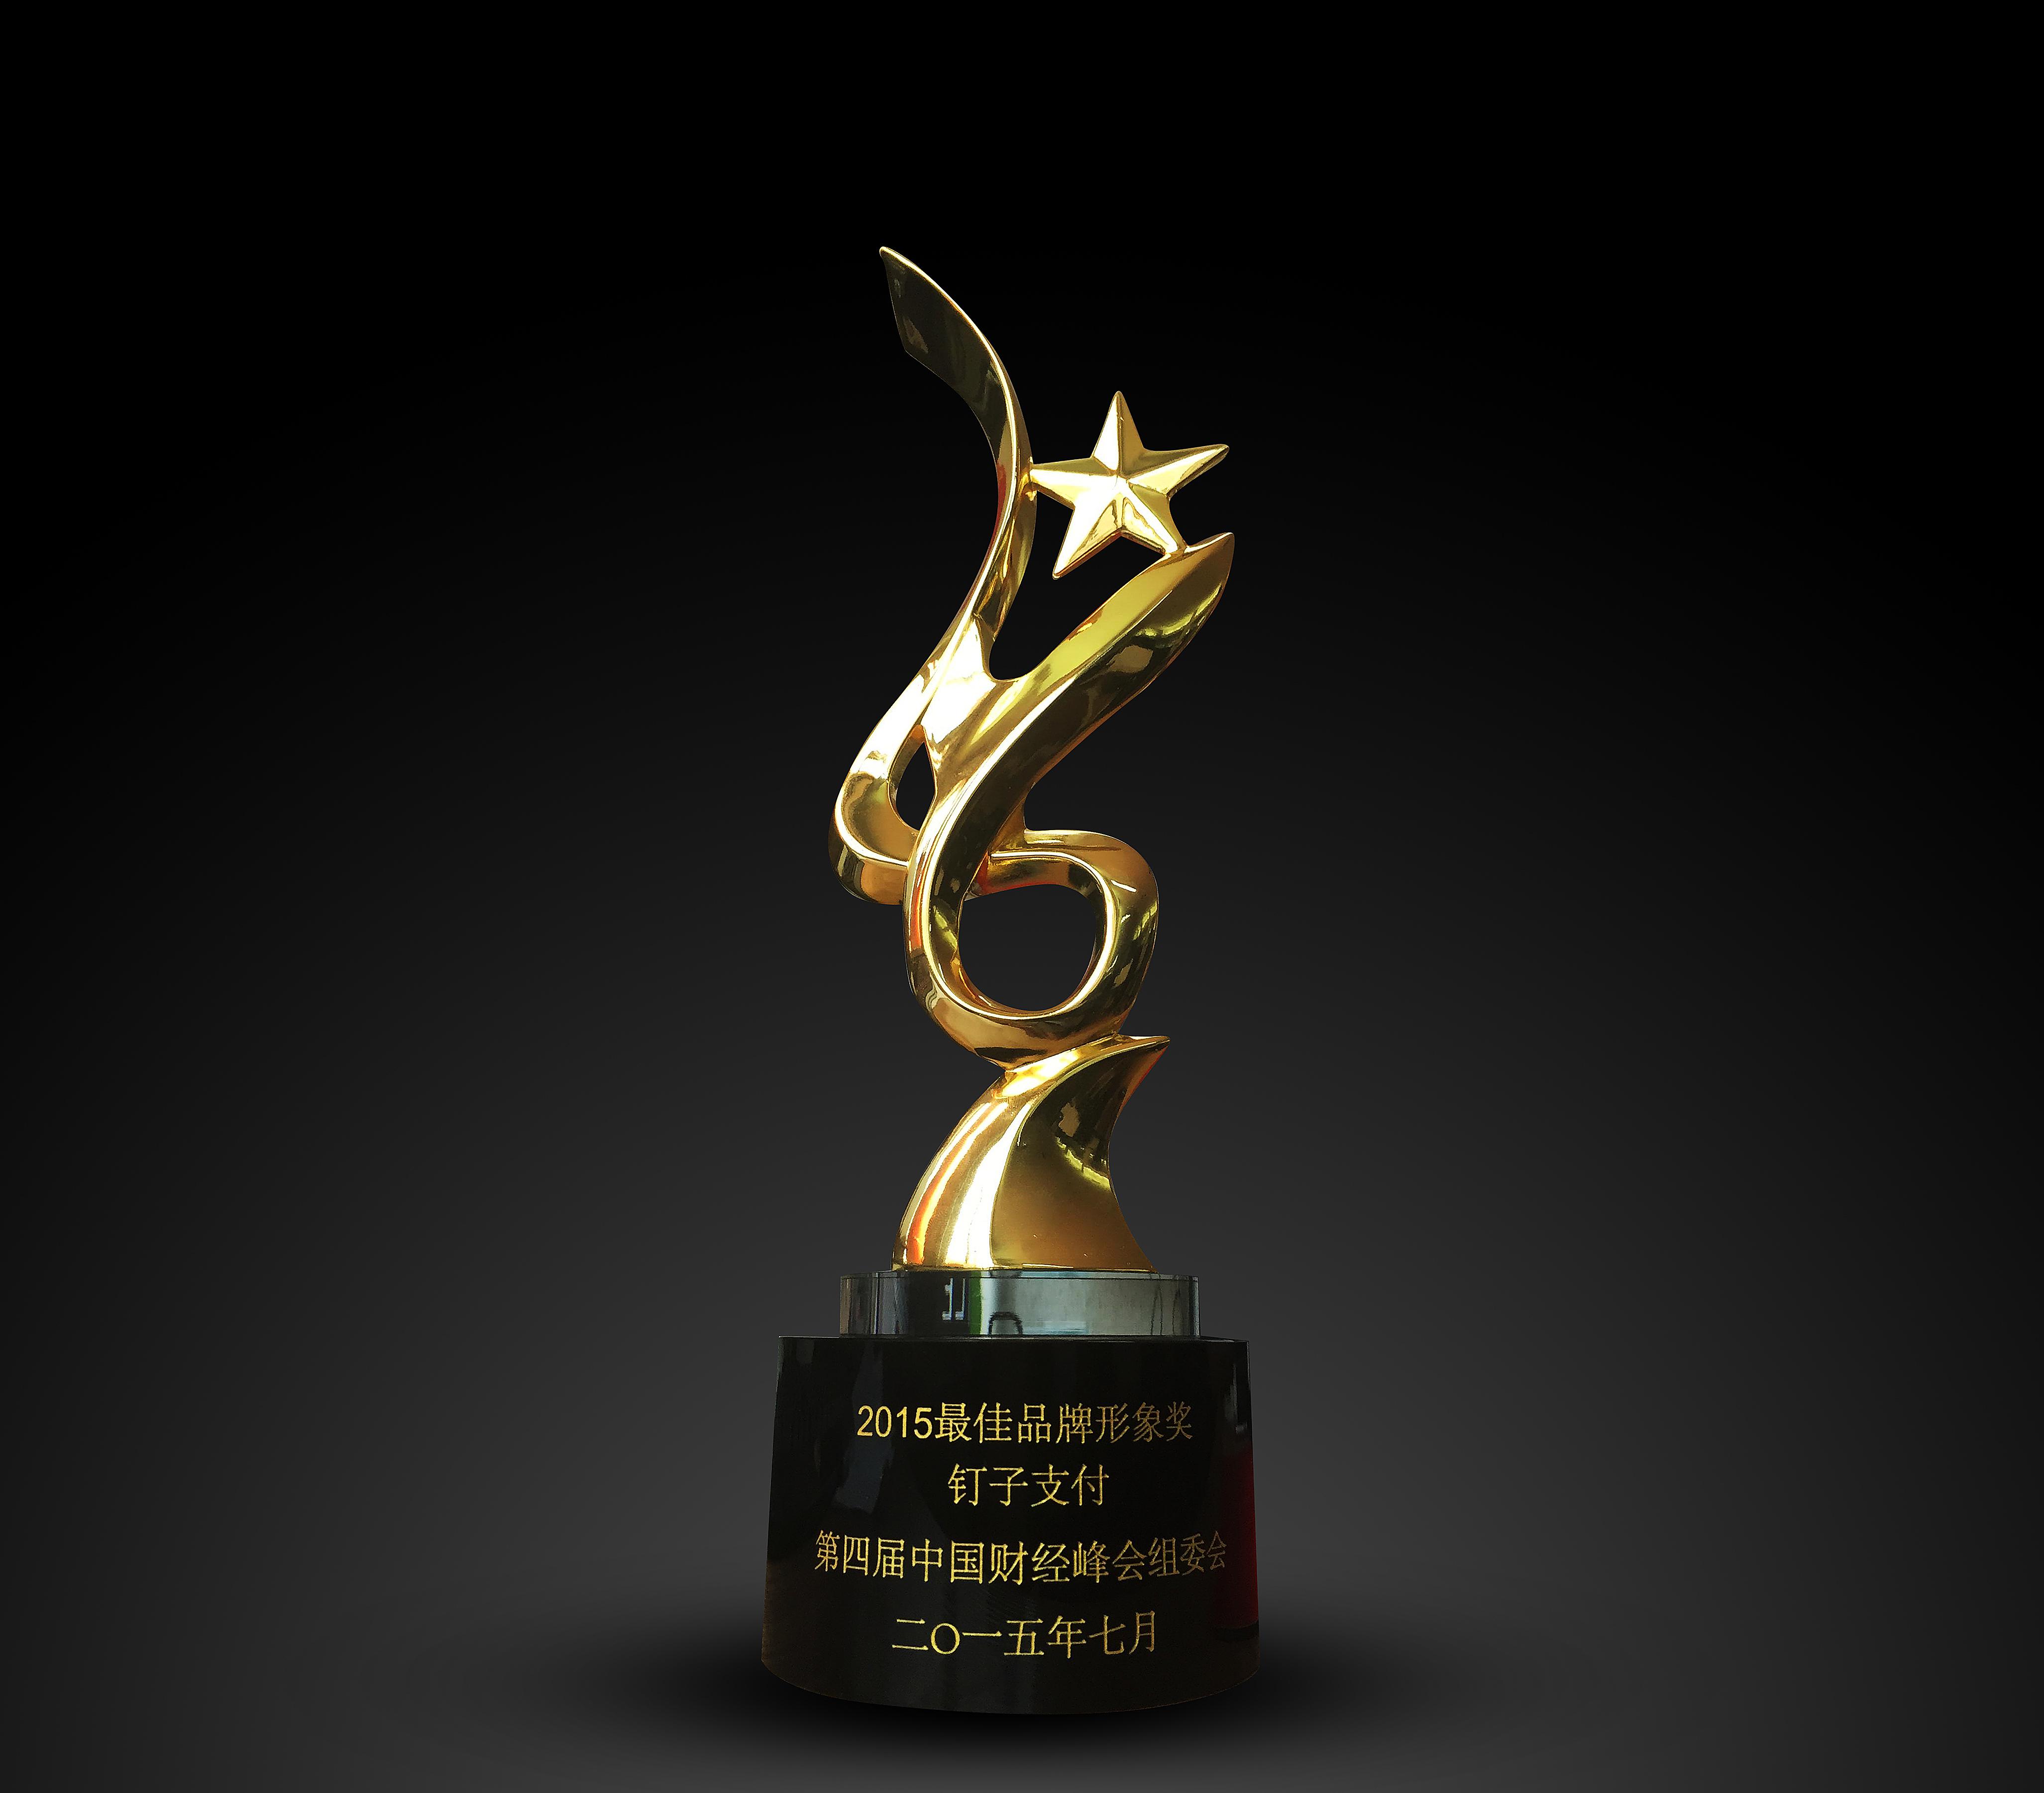 钉子支付荣膺2015中国财经峰会最佳品牌形象